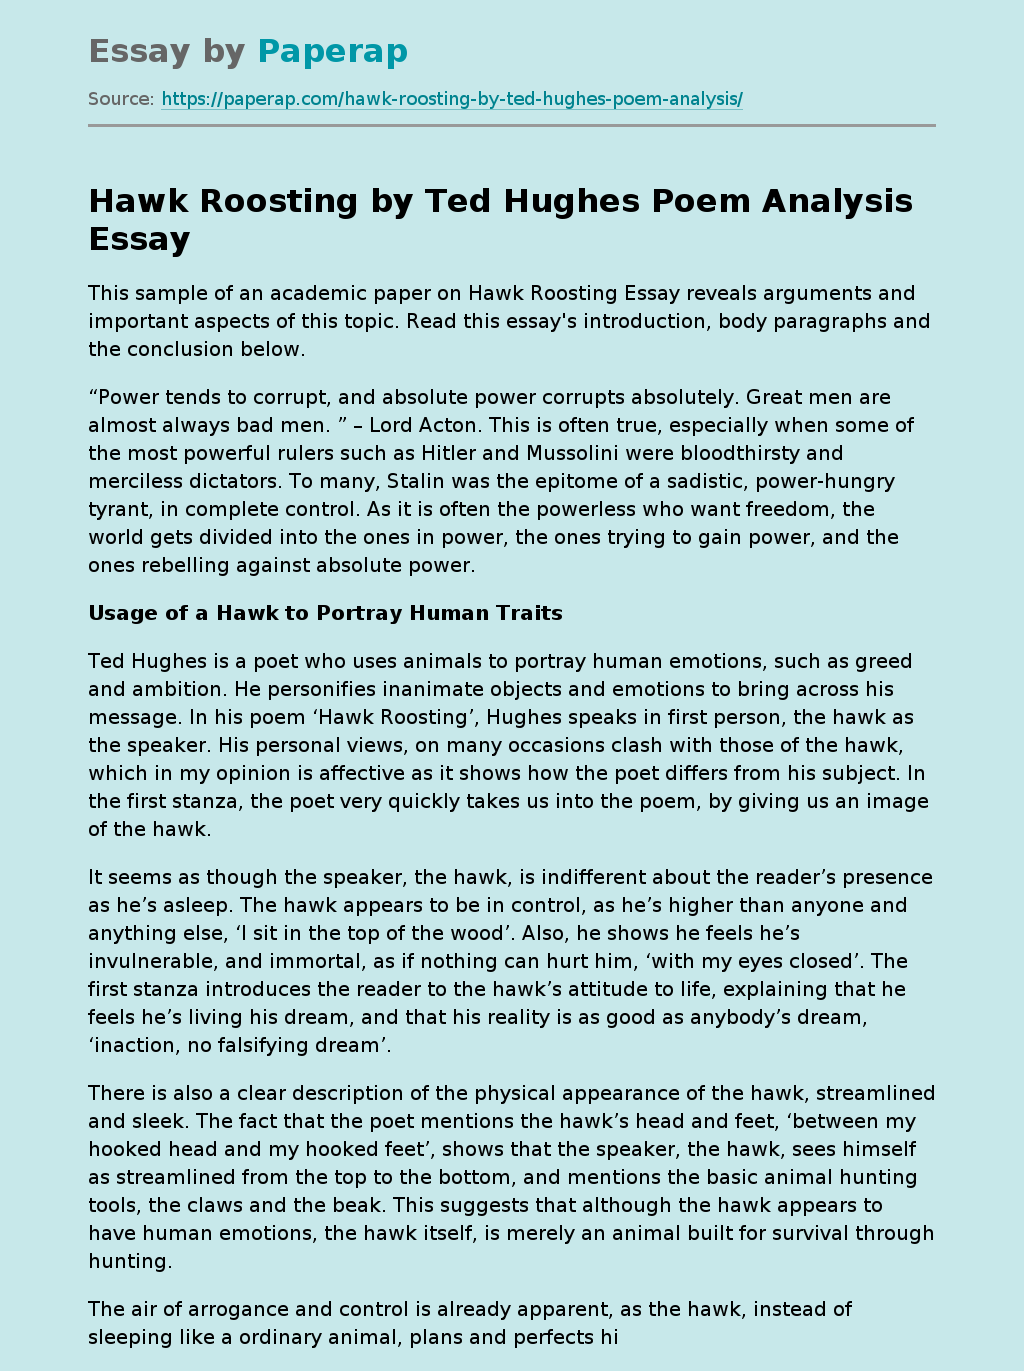 Hawk Roosting by Ted Hughes Poem Analysis